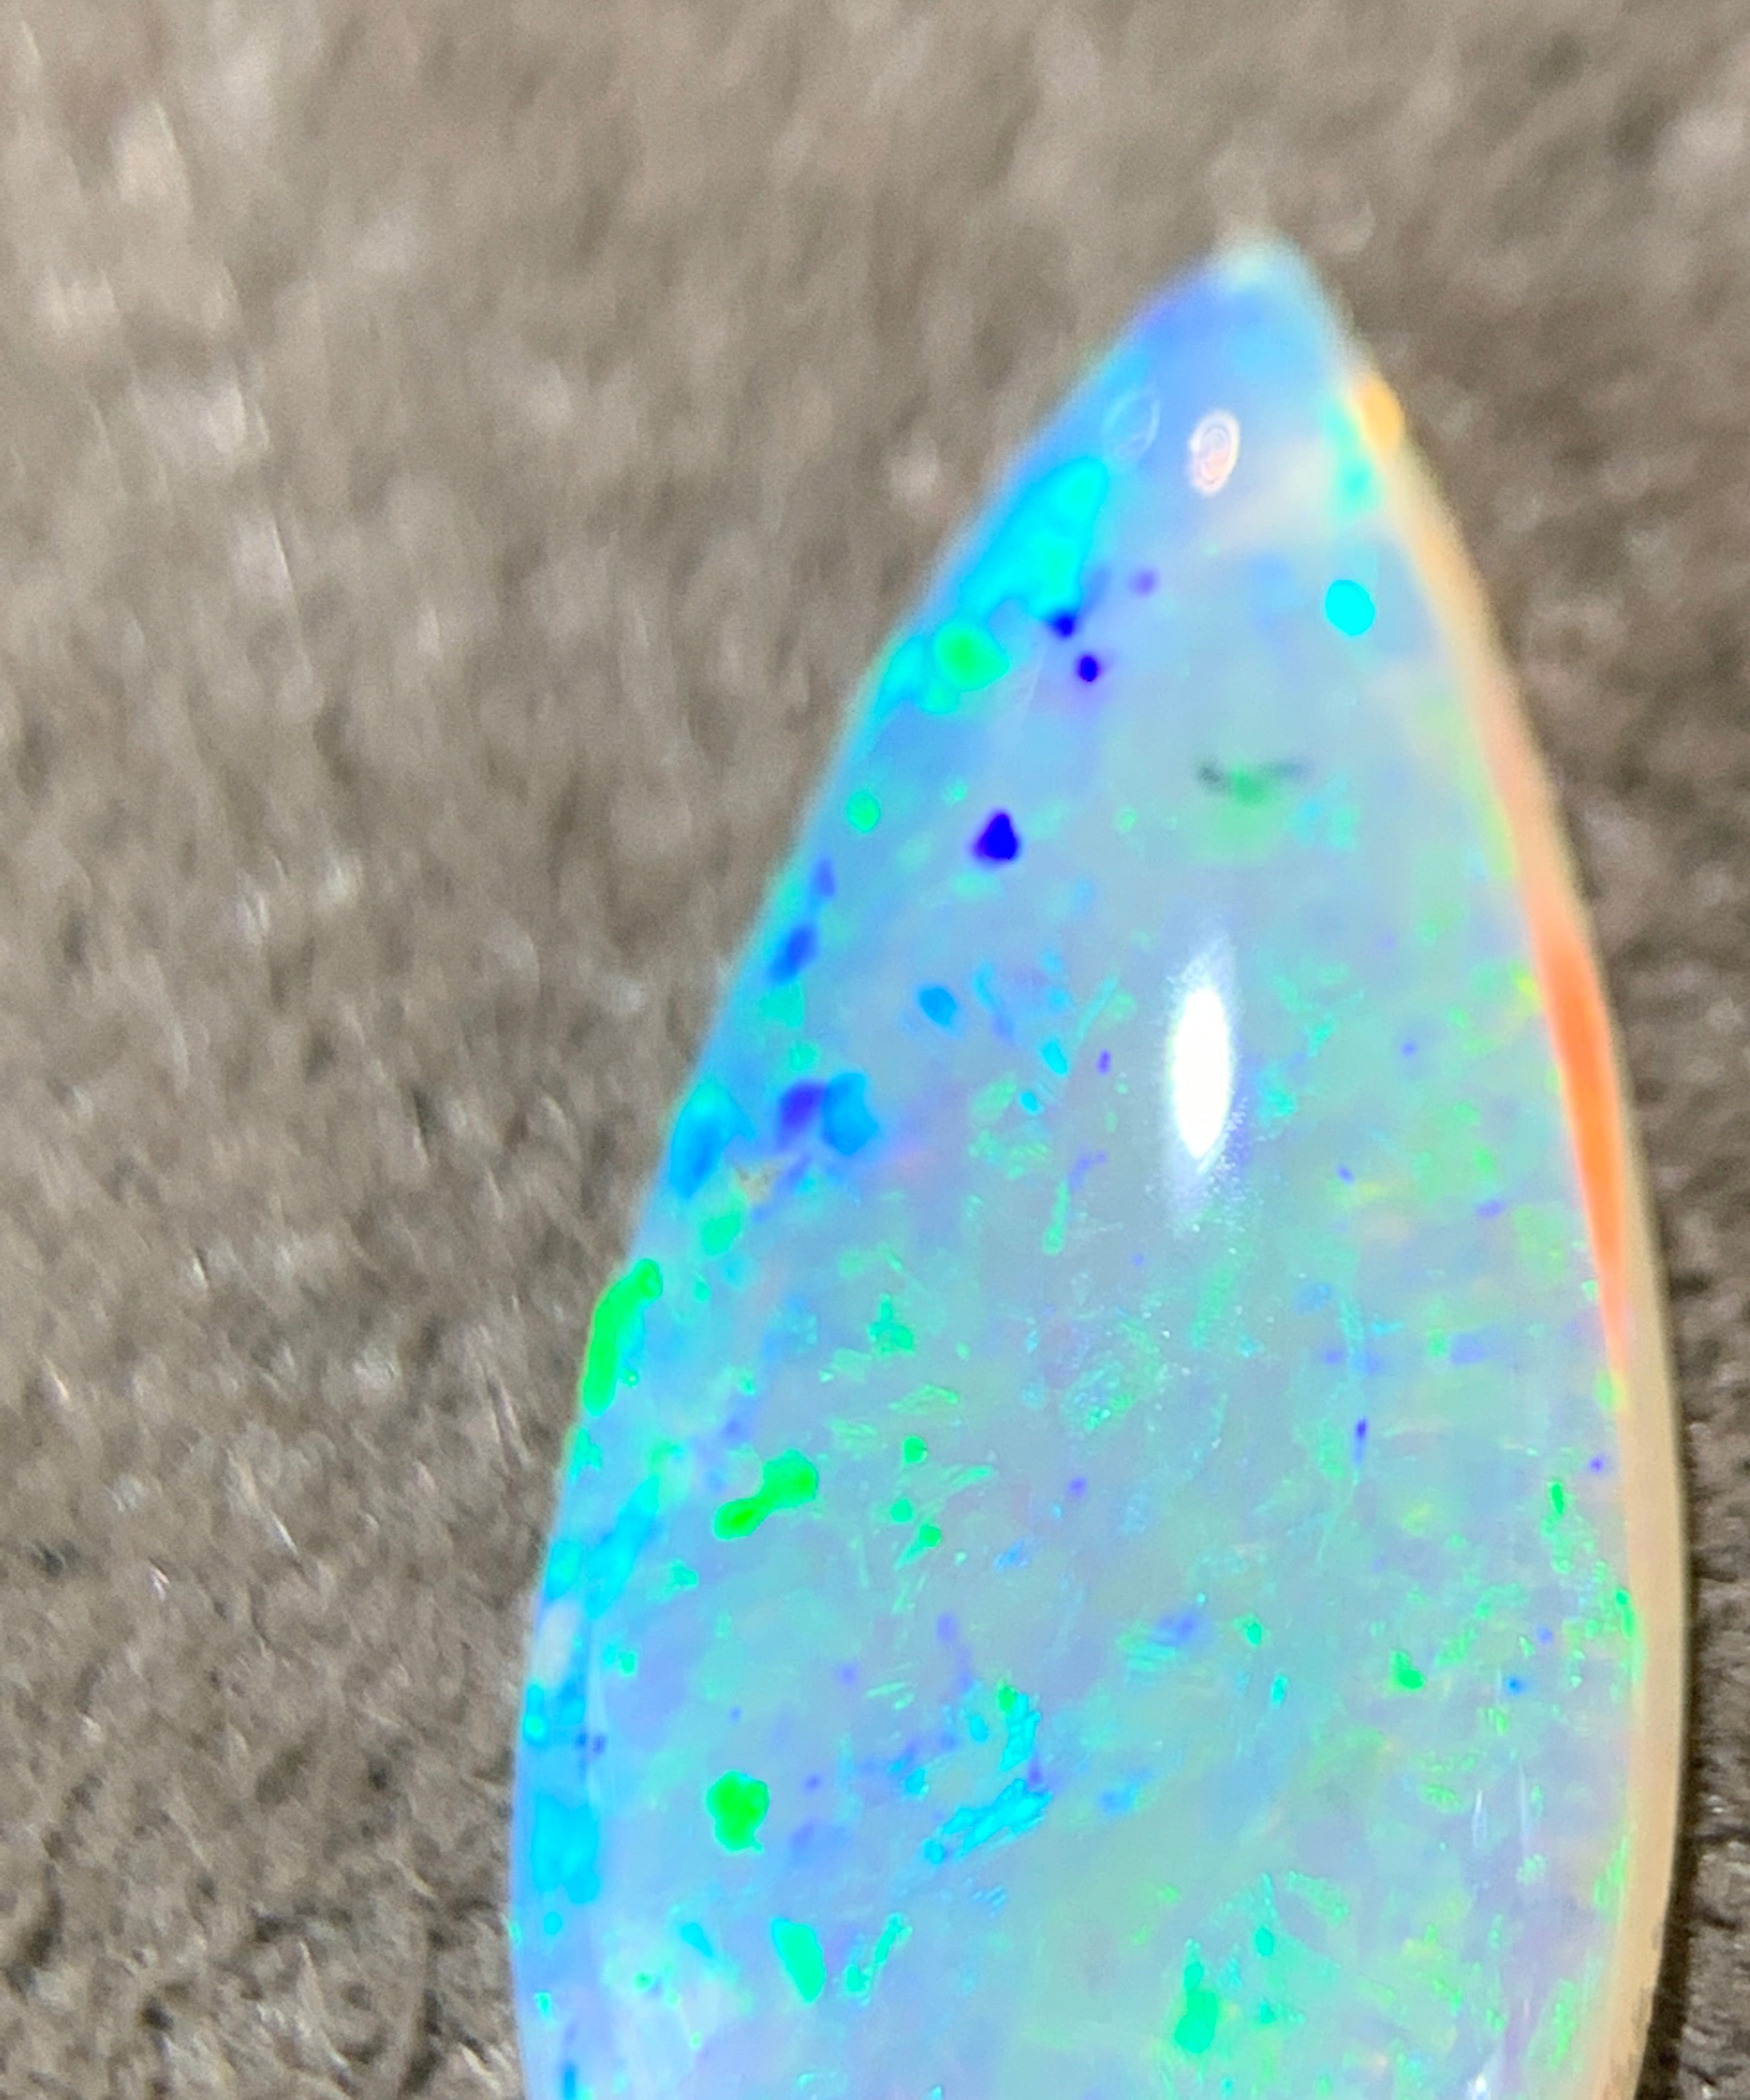 Pearshape Crystal Opal 1.6ct - Masterpiece Jewellery Opal & Gems Sydney Australia | Online Shop